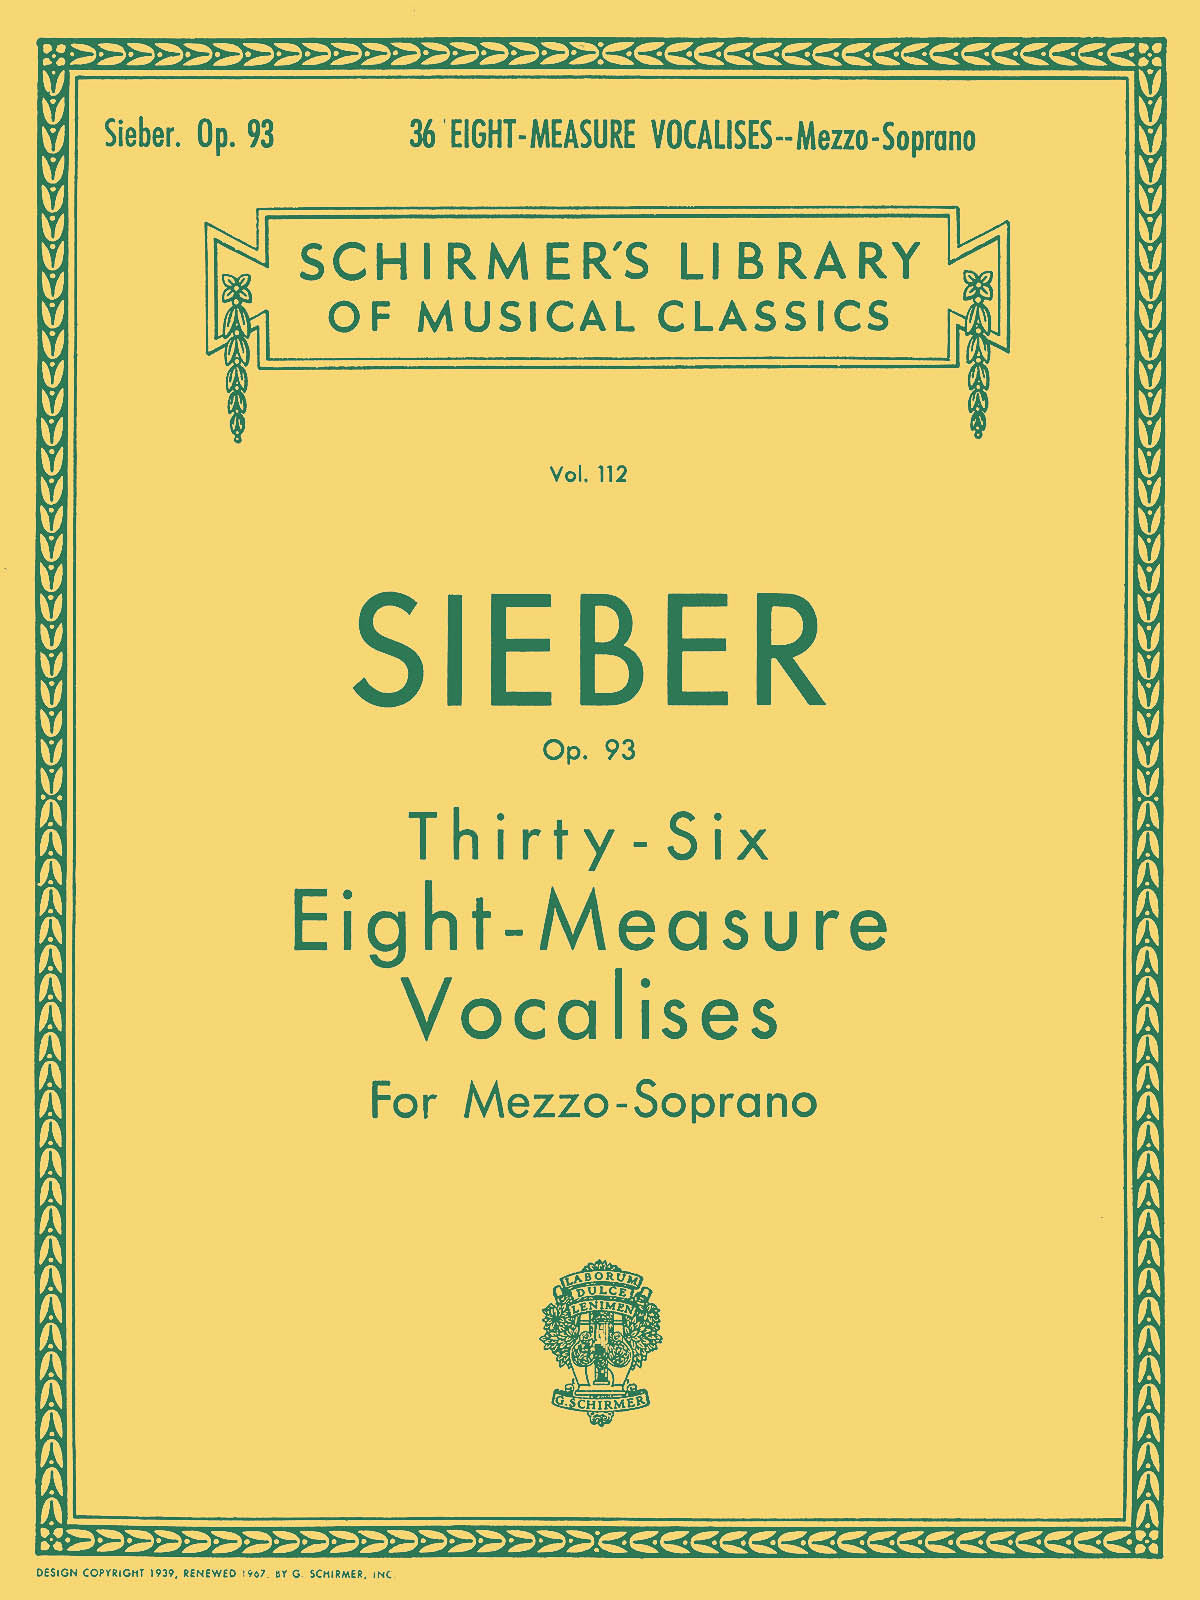 Sieber 36 Eight-Measure Vocalises Op.93